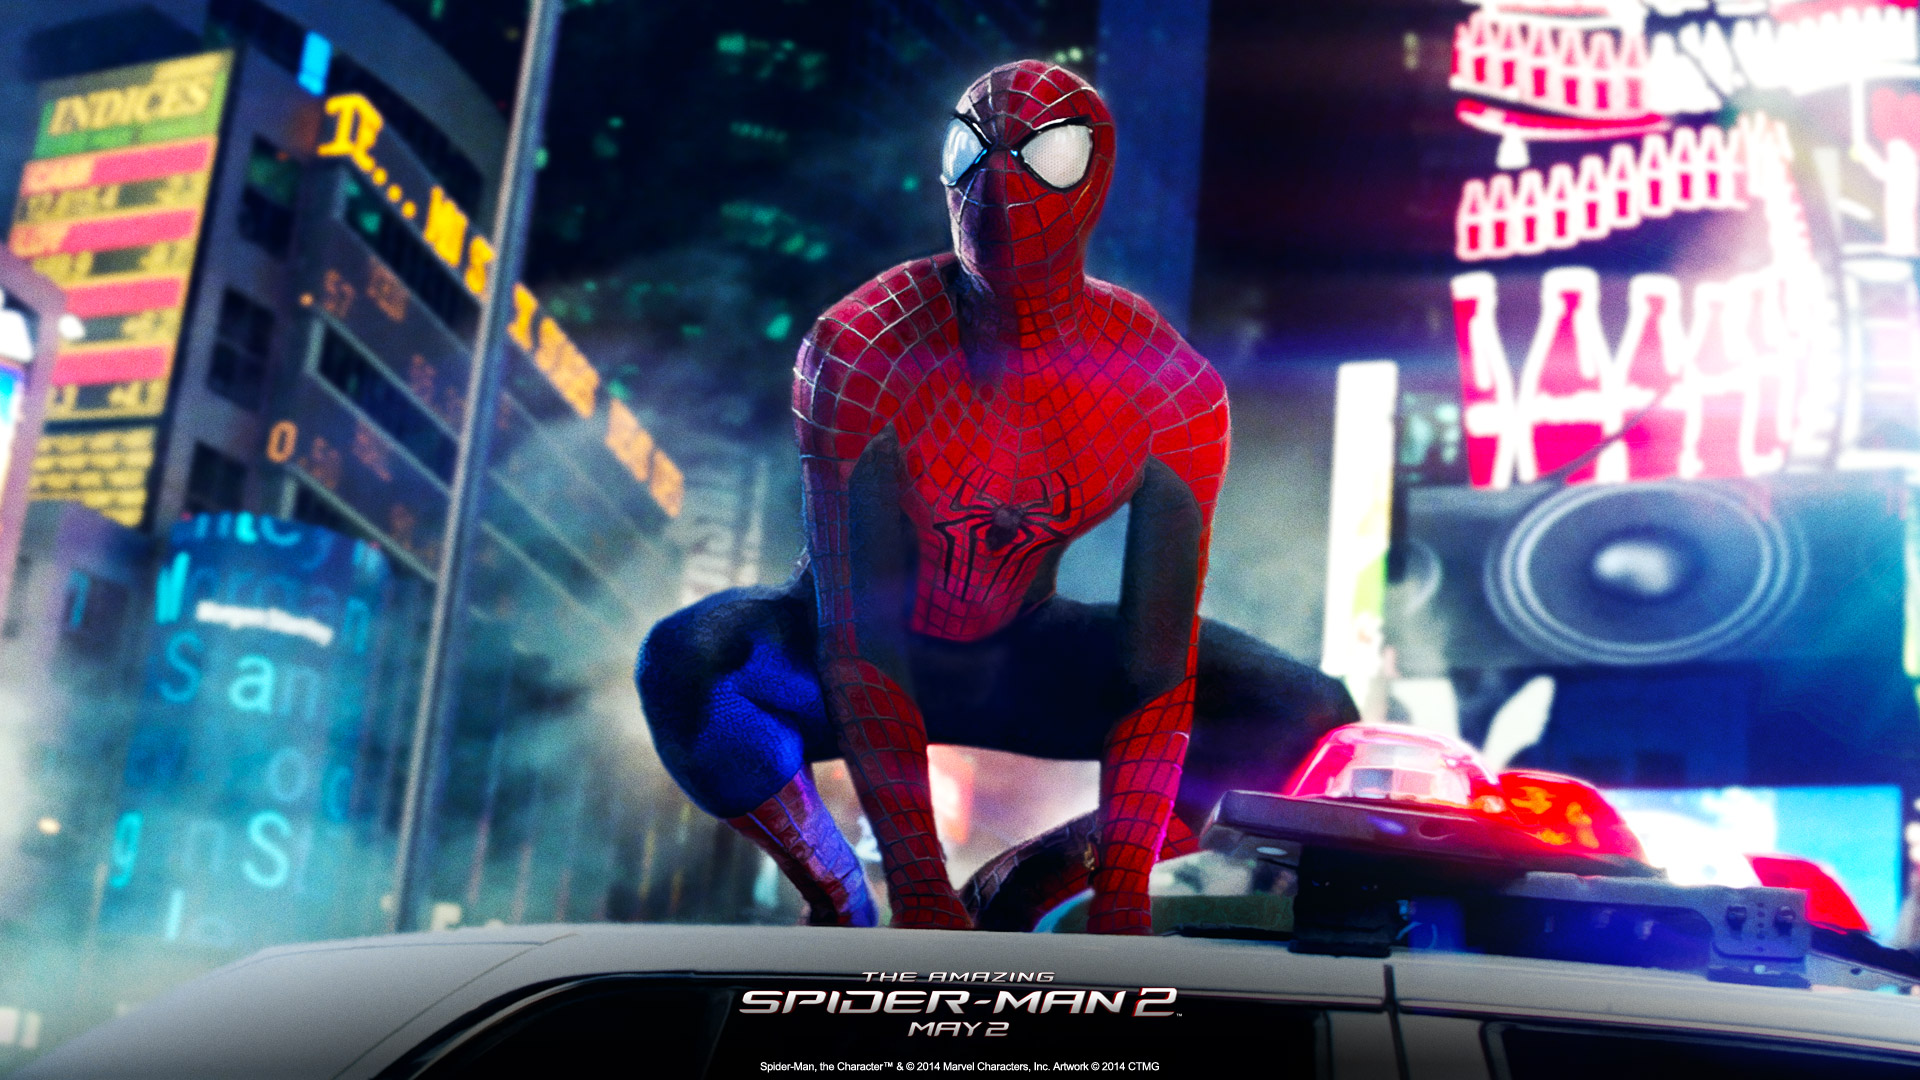 movie, the amazing spider man 2, spider man